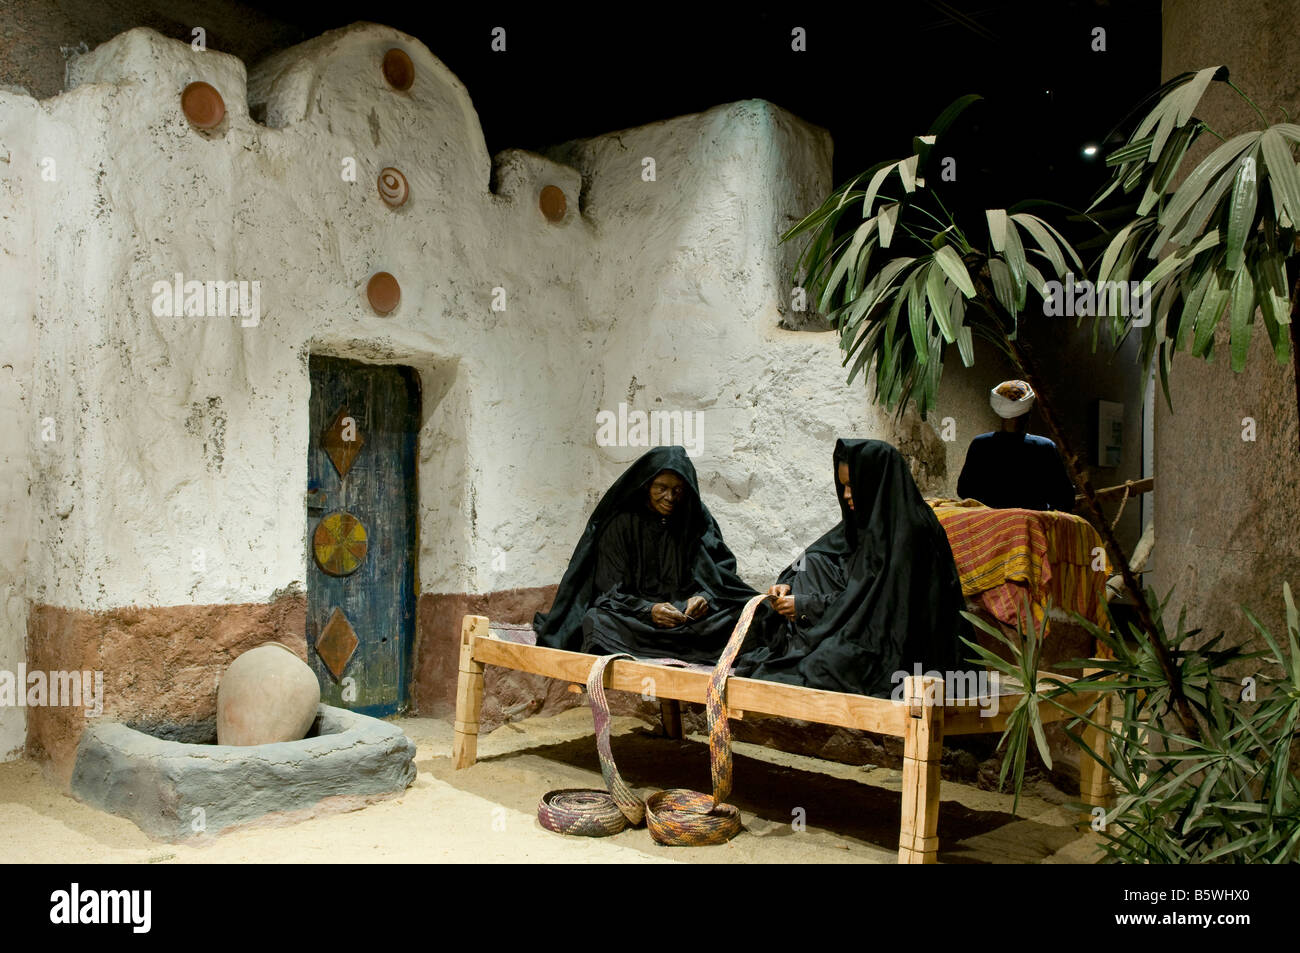 Eine Nubische Ethnographie Ausstellung im Nubischen Museum offiziell das Internationale Museum von Nubien ein archäologisches Museum in Assuan Ägypten entfernt Stockfoto